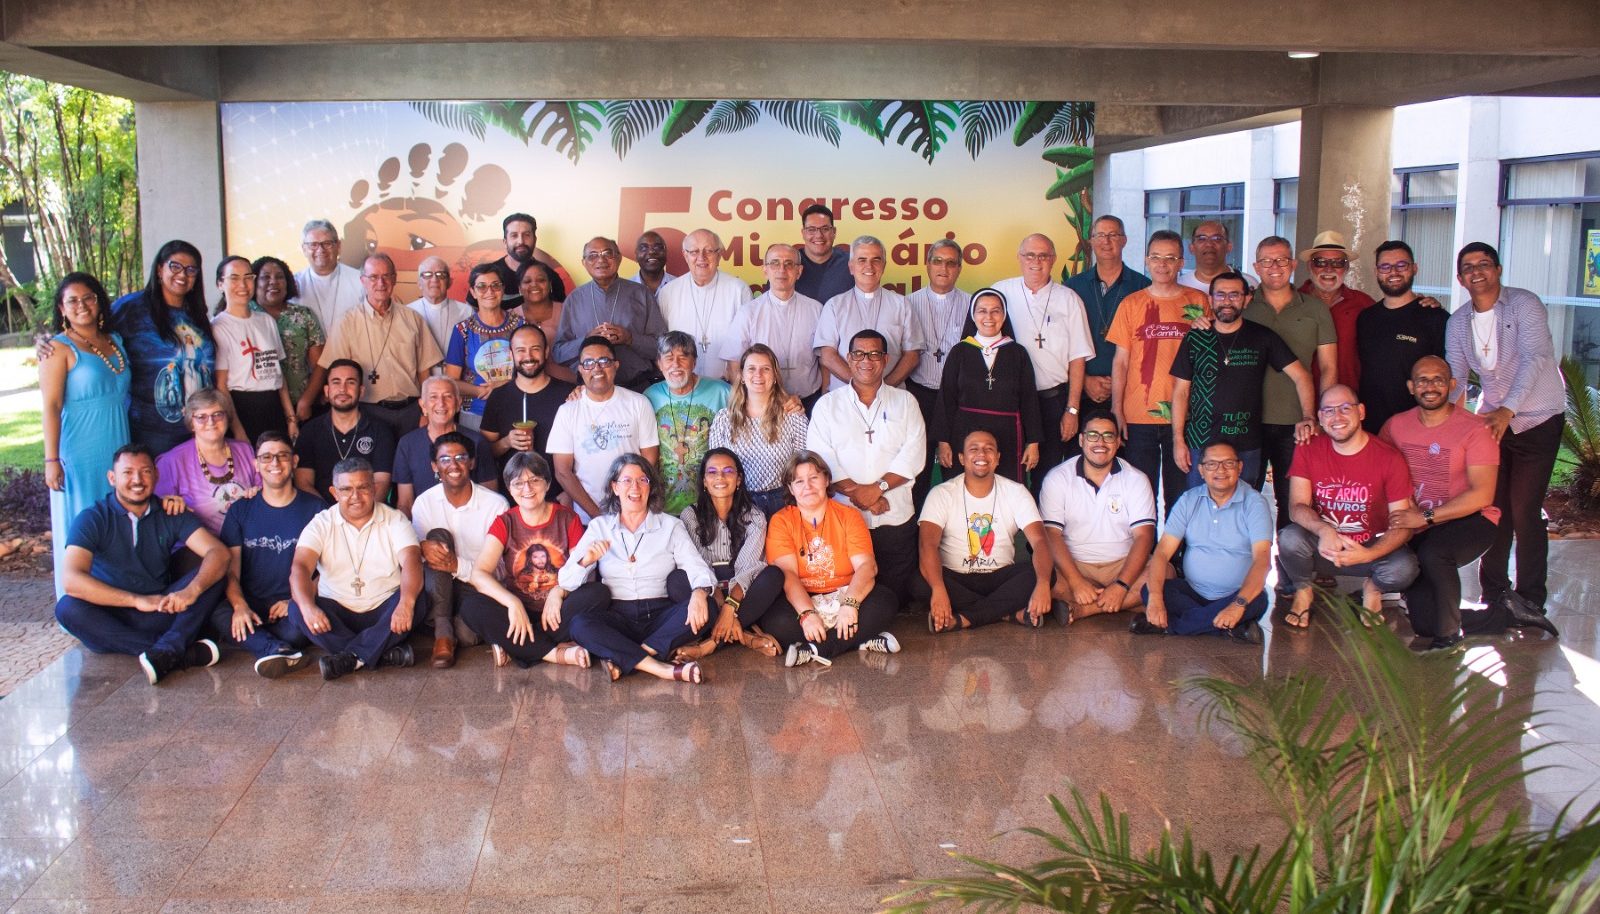 Série de atividades para animar a vida missionária da Igreja no Brasil aconteceram em Brasília desde o dia 21 de março